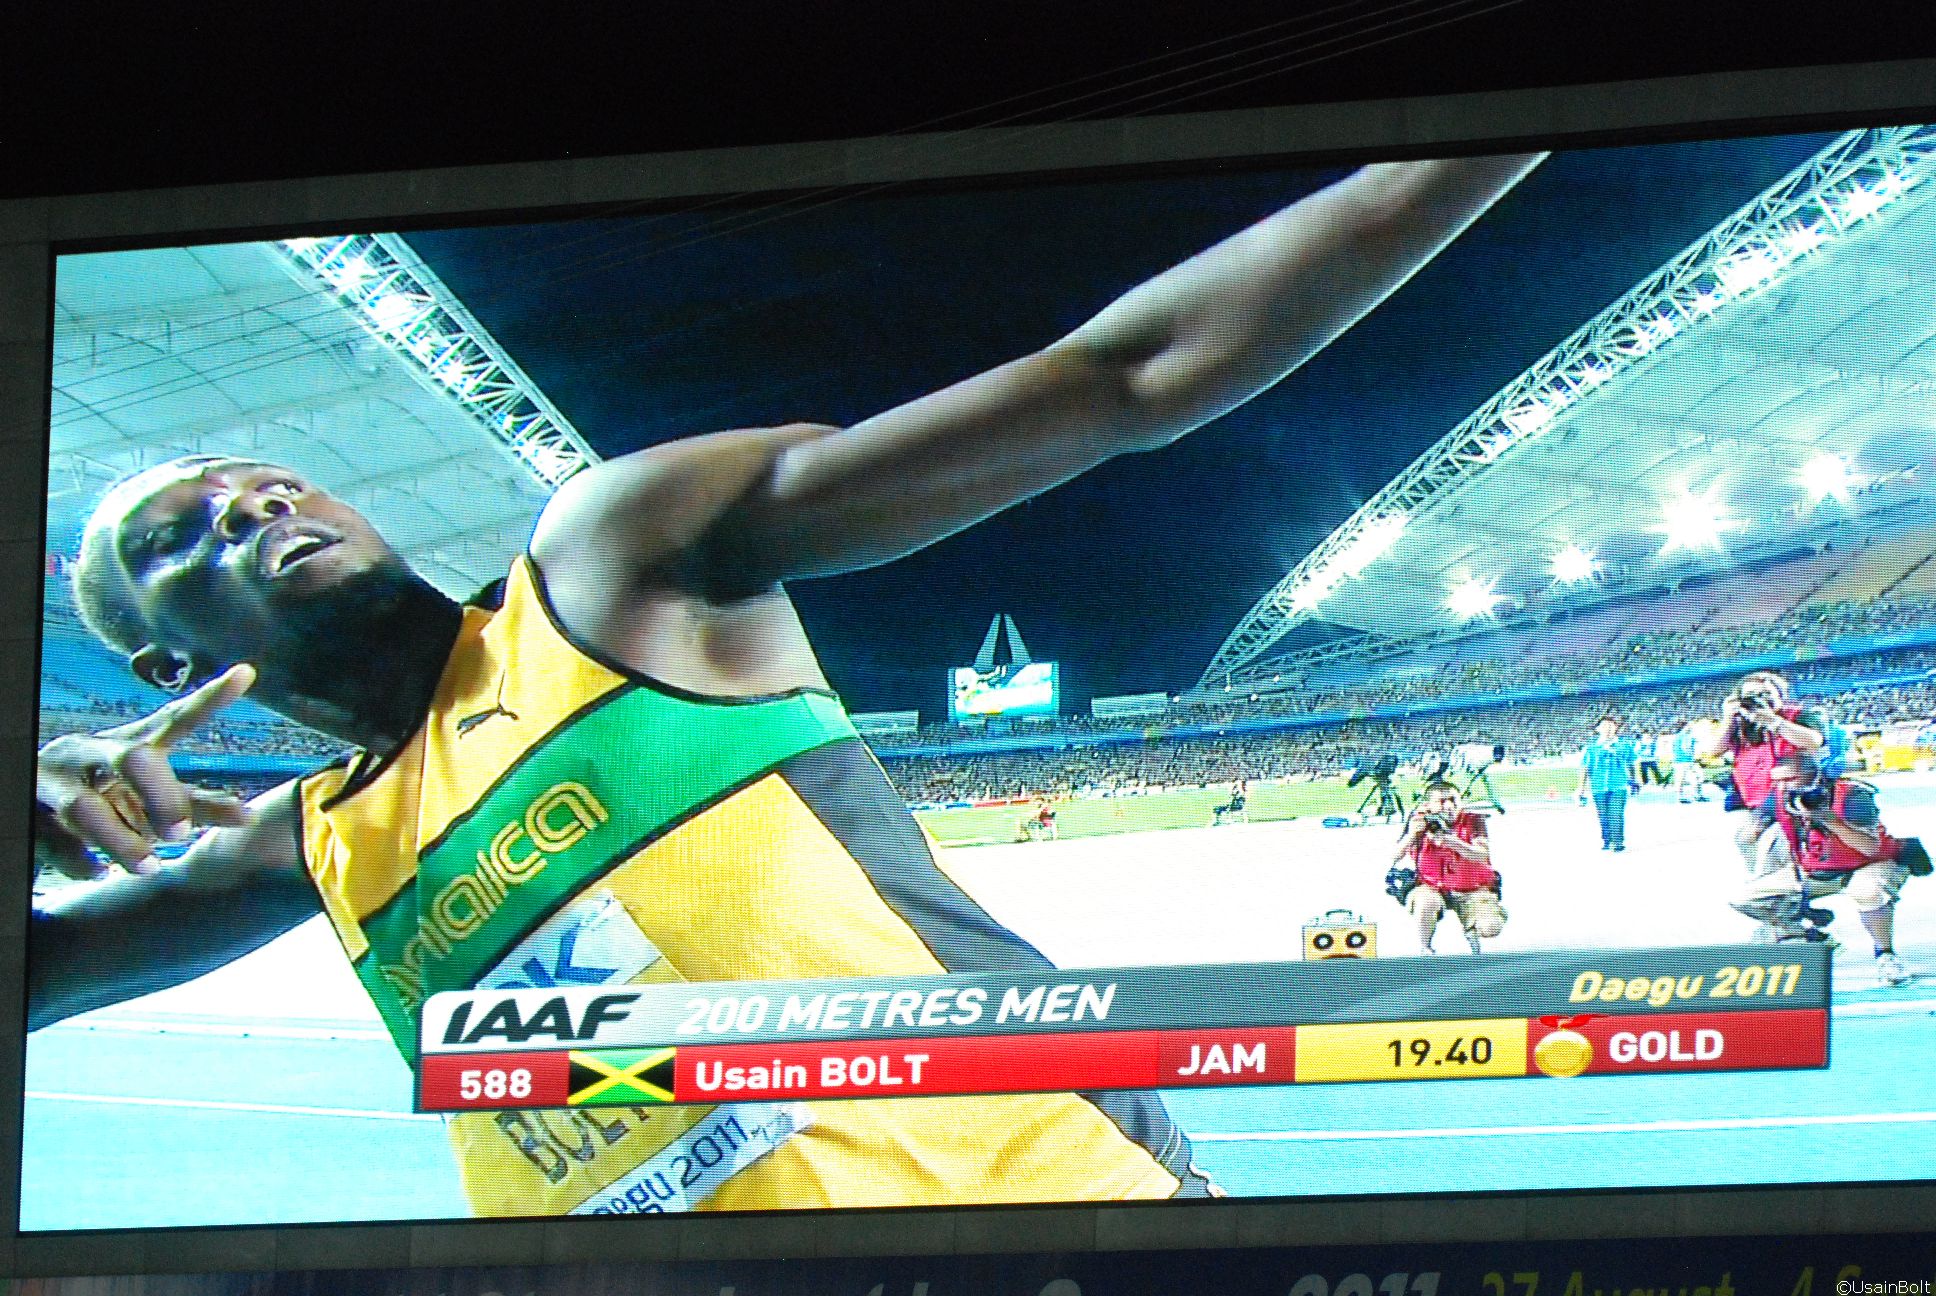 Bolt runs 19.40 in 200m